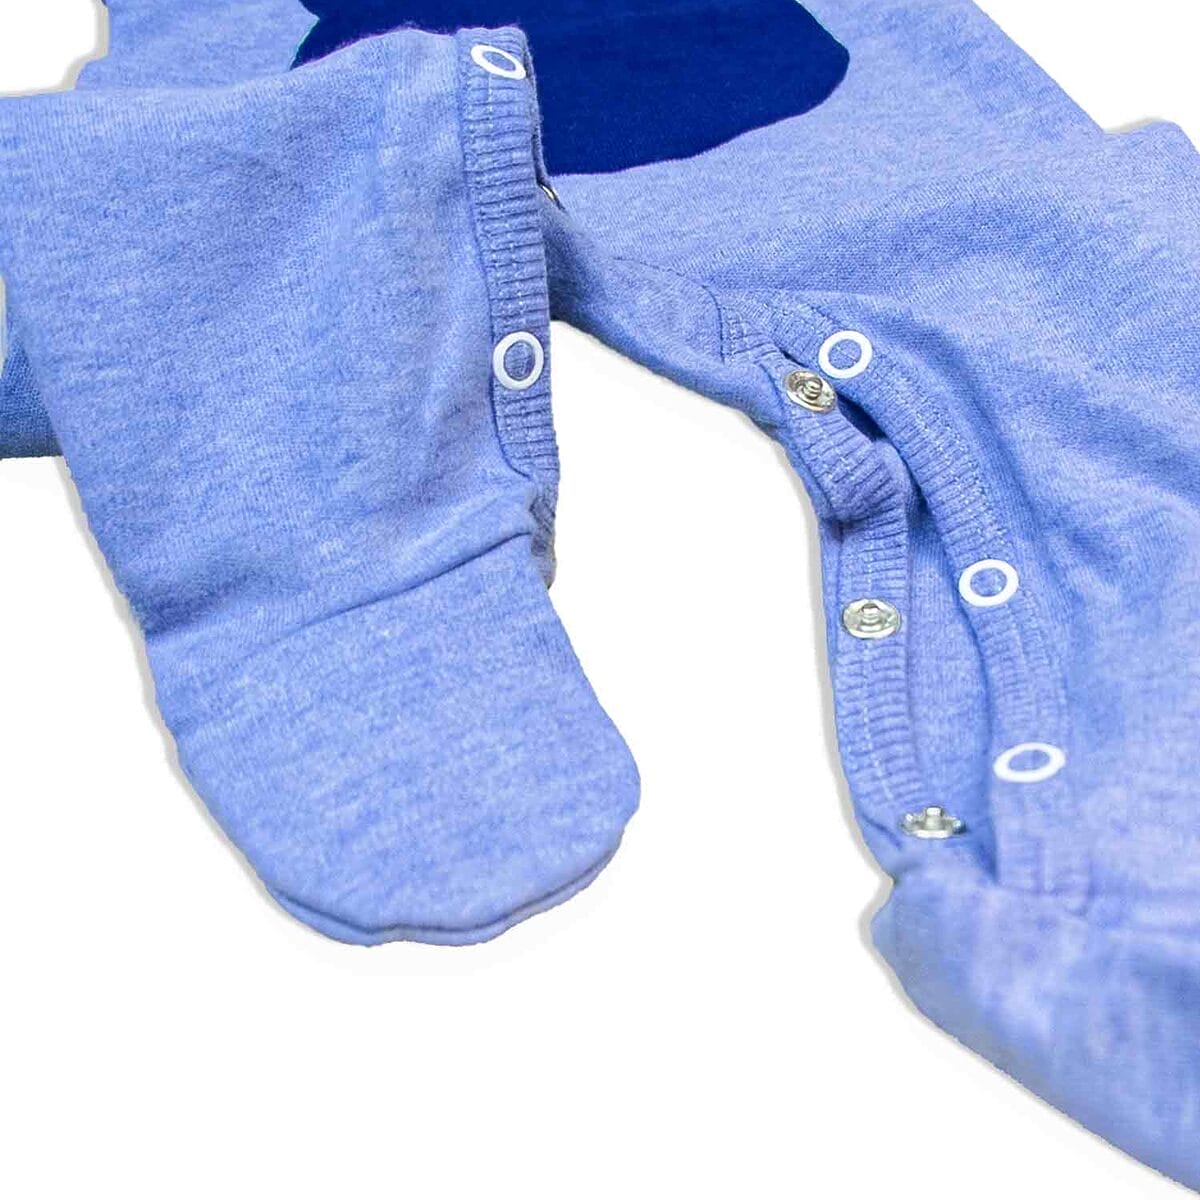 Nachhaltiger blauer Babystrampler aus Bio-Baumwolle mit benutzerfreundlicher Wickelöffnung und sicheren Druckknöpfen für einfaches An- und Ausziehen.